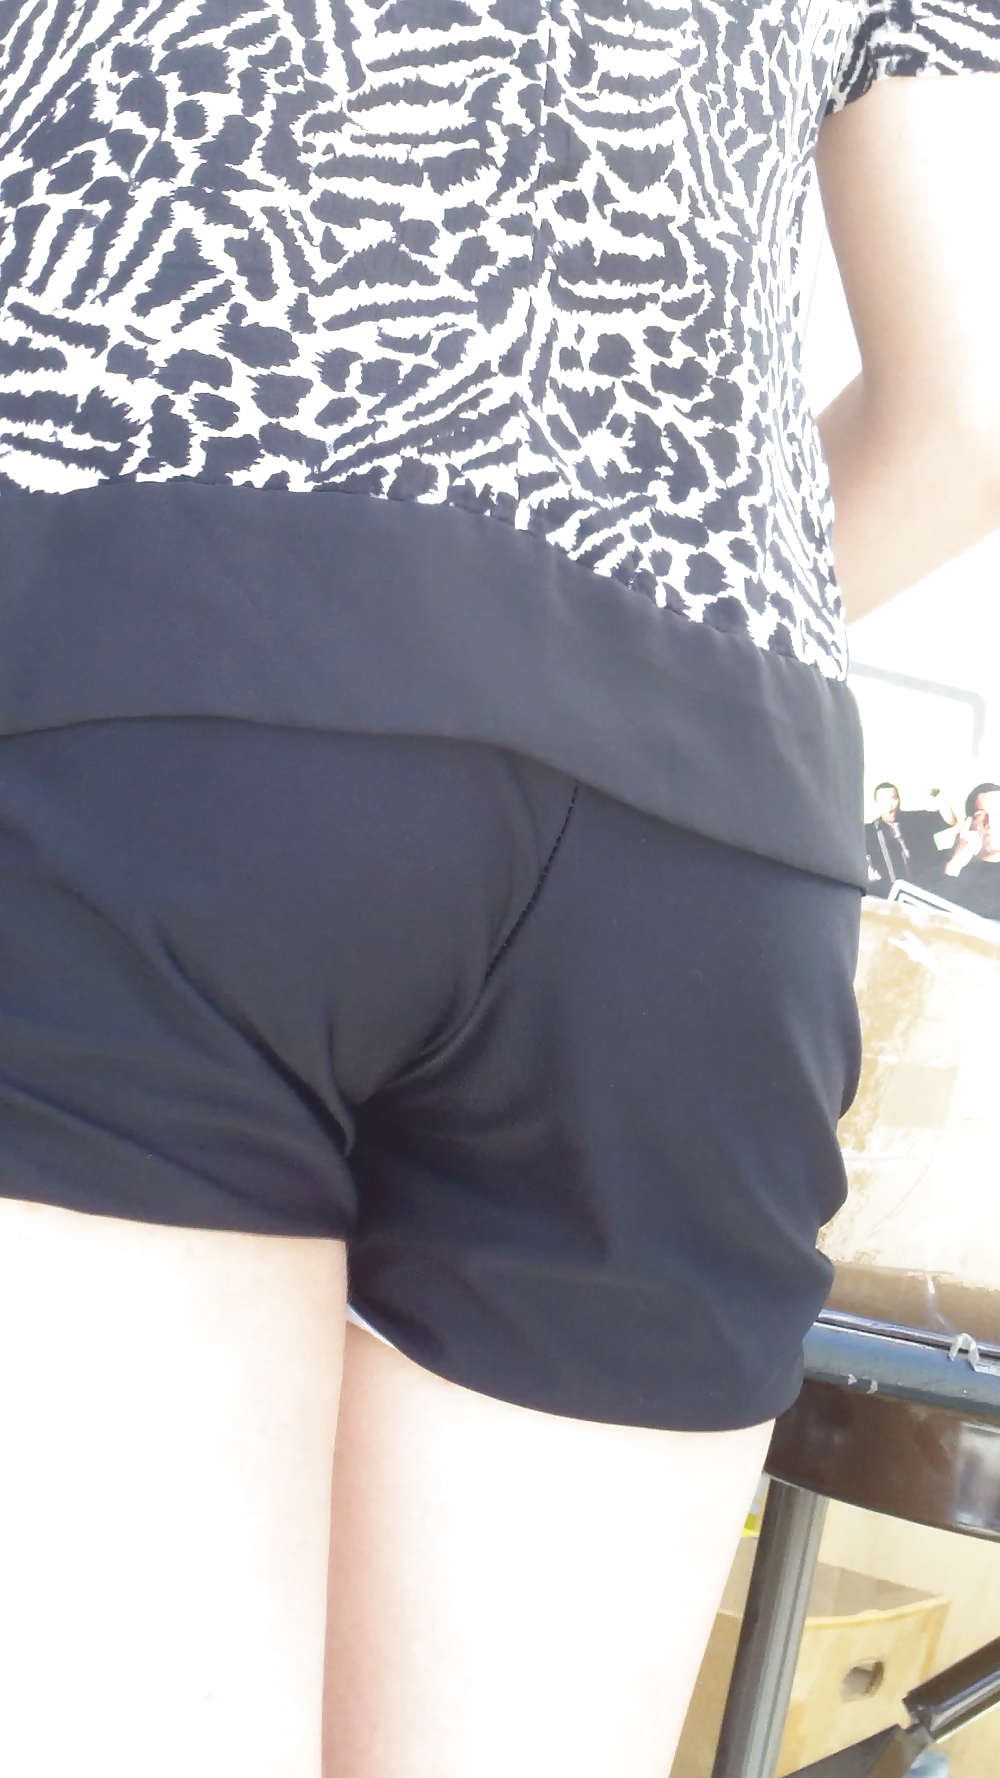 Teen ass & butt in jean shorts shopping #18775615